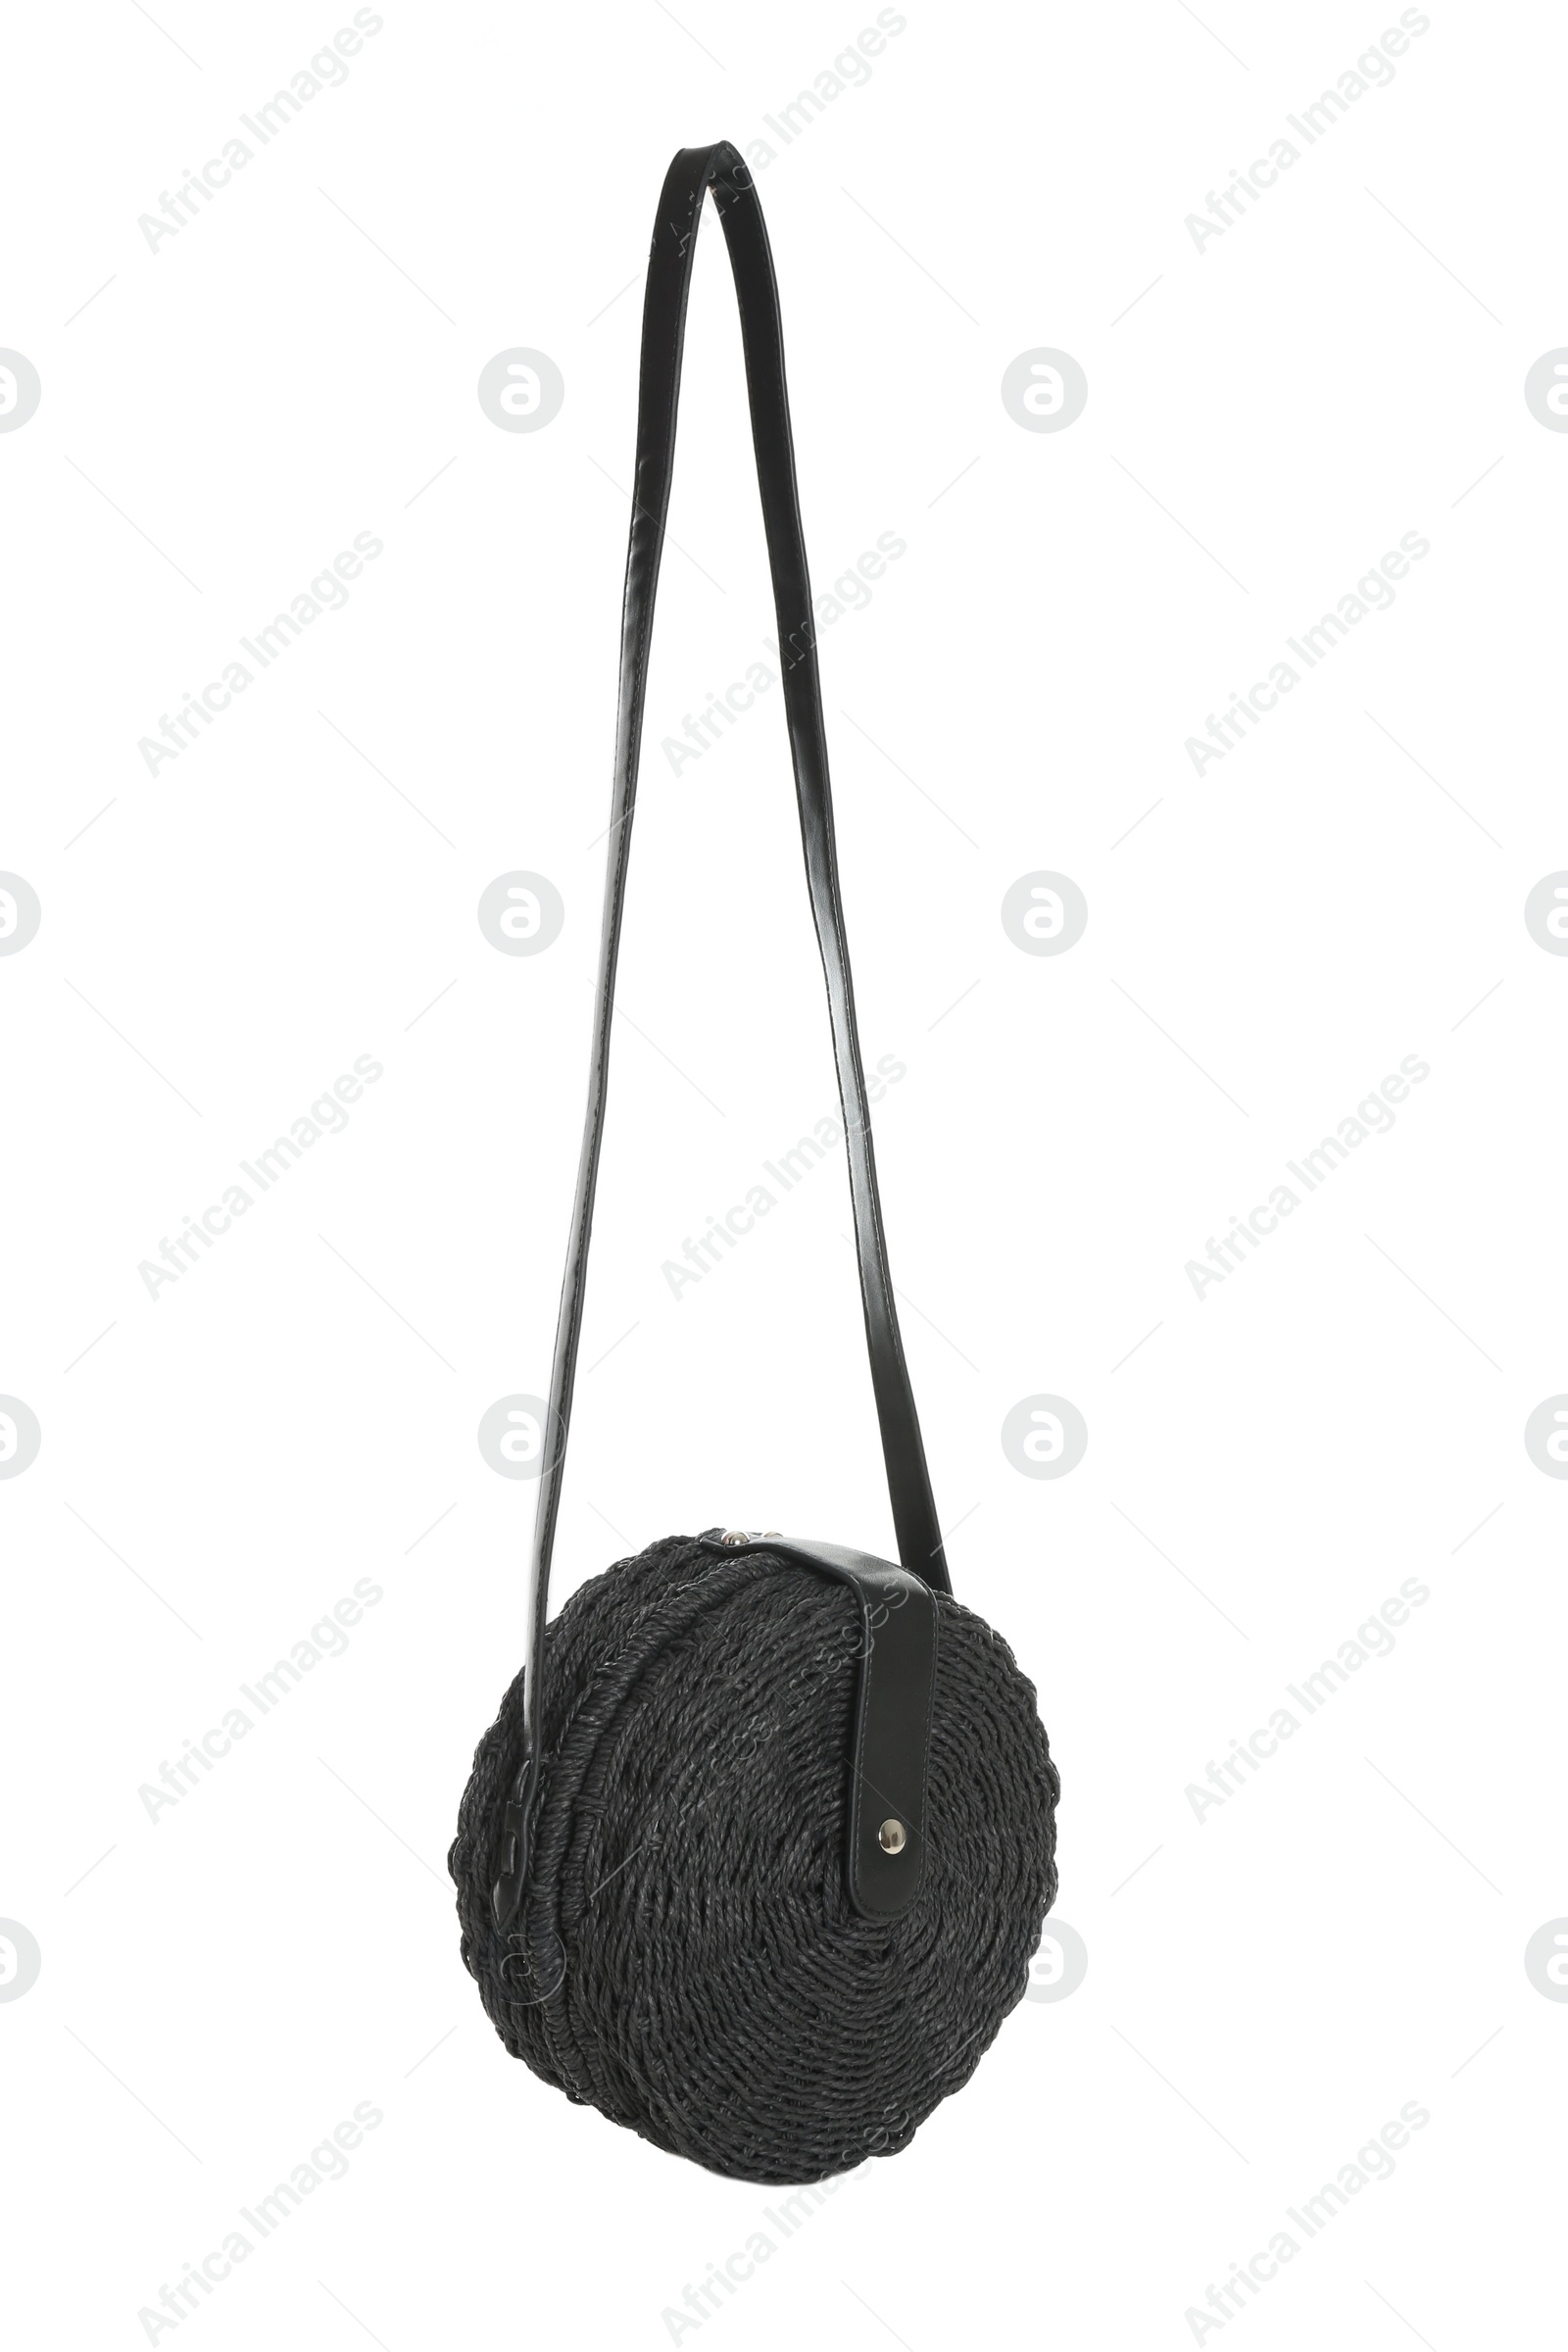 Photo of Stylish black woman's bag isolated on white